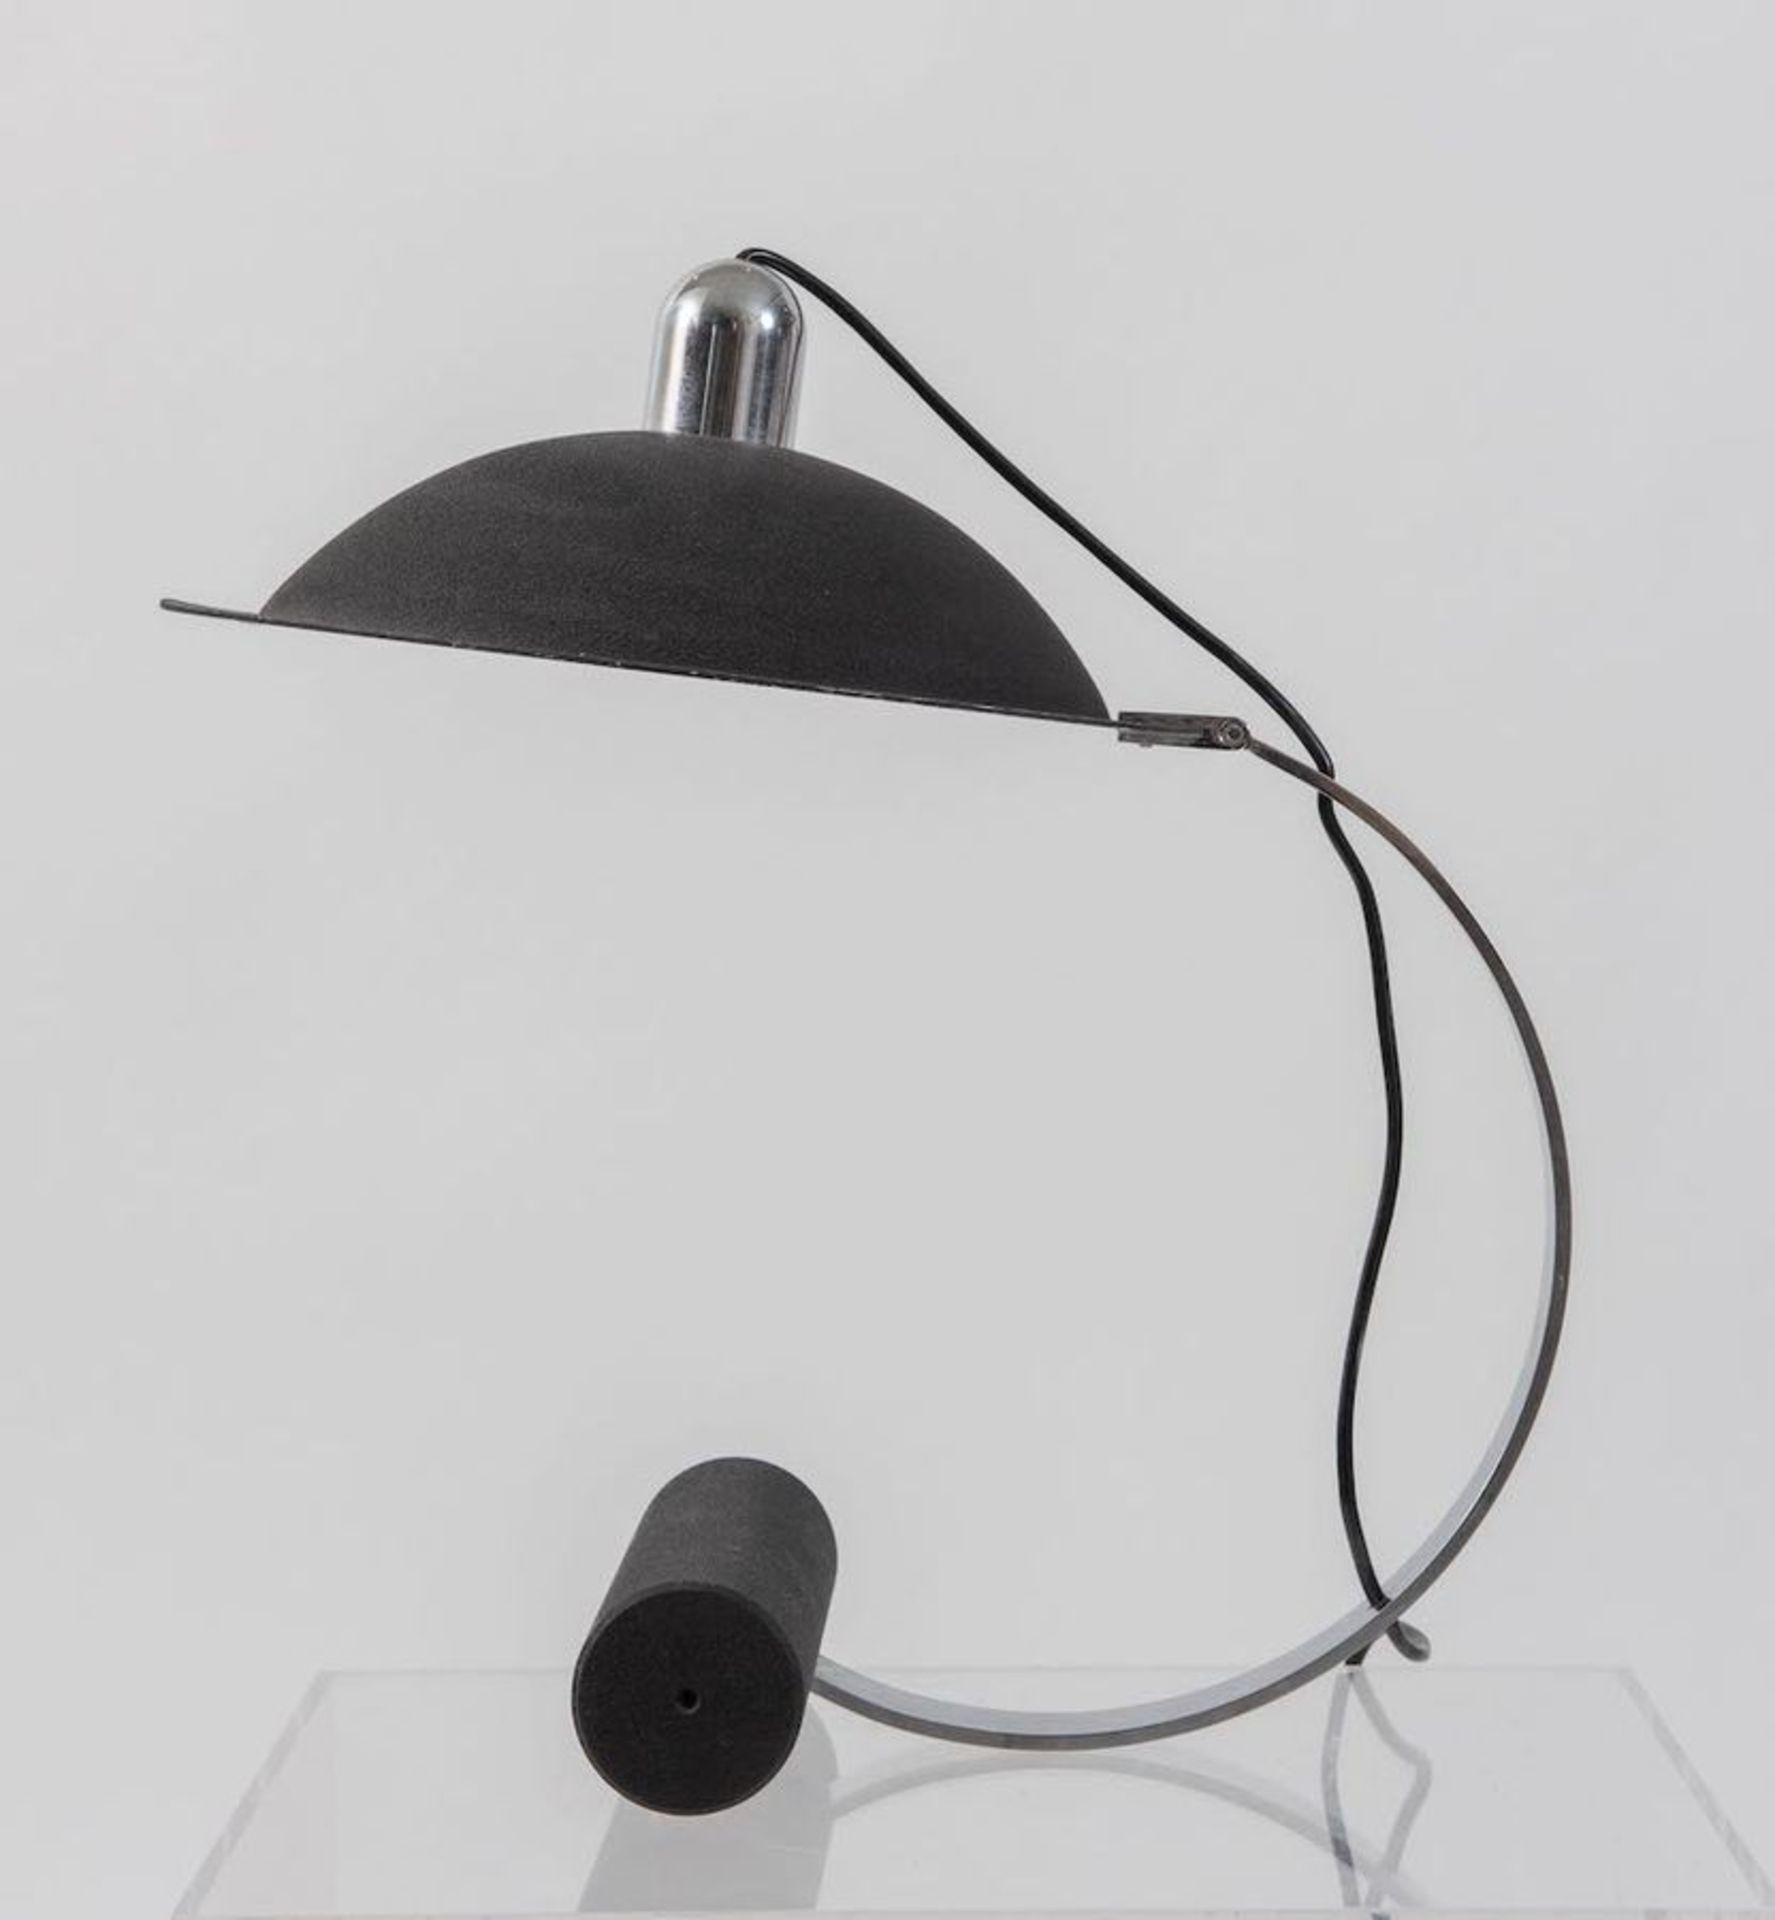 LAMPERTI Lampada da tavolo in acciaio cromato e alluminio verniciato. Prod. Lamperti, Italia, 1970 c - Image 2 of 2